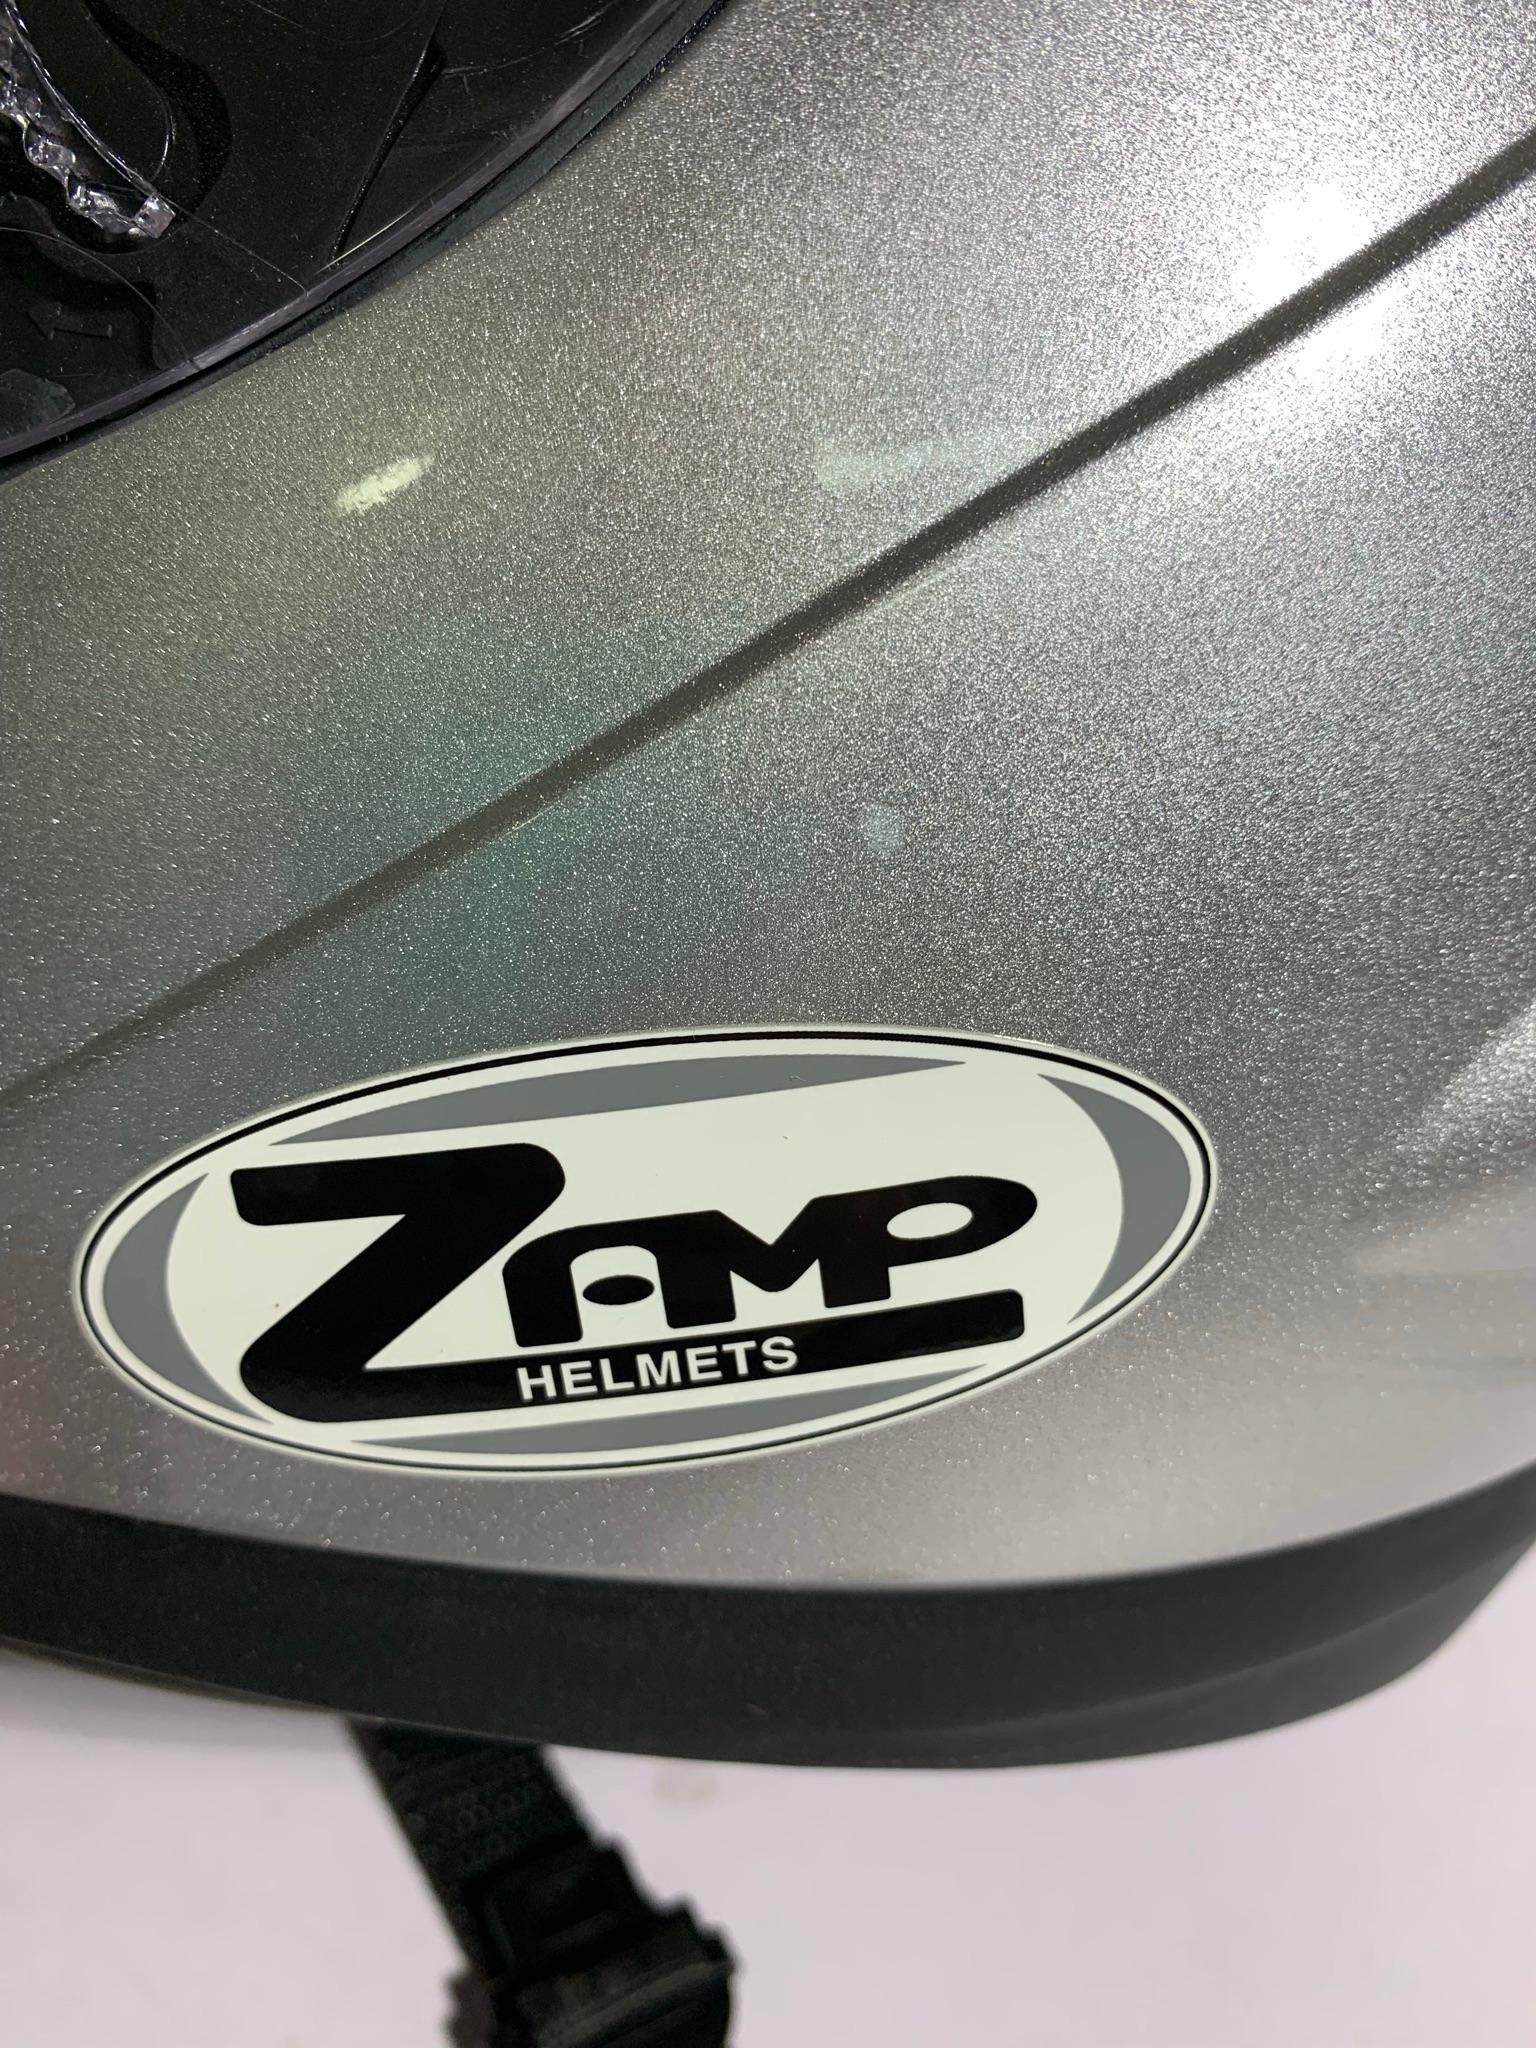 Zamp XS ECE/22-05 DOT Helmet